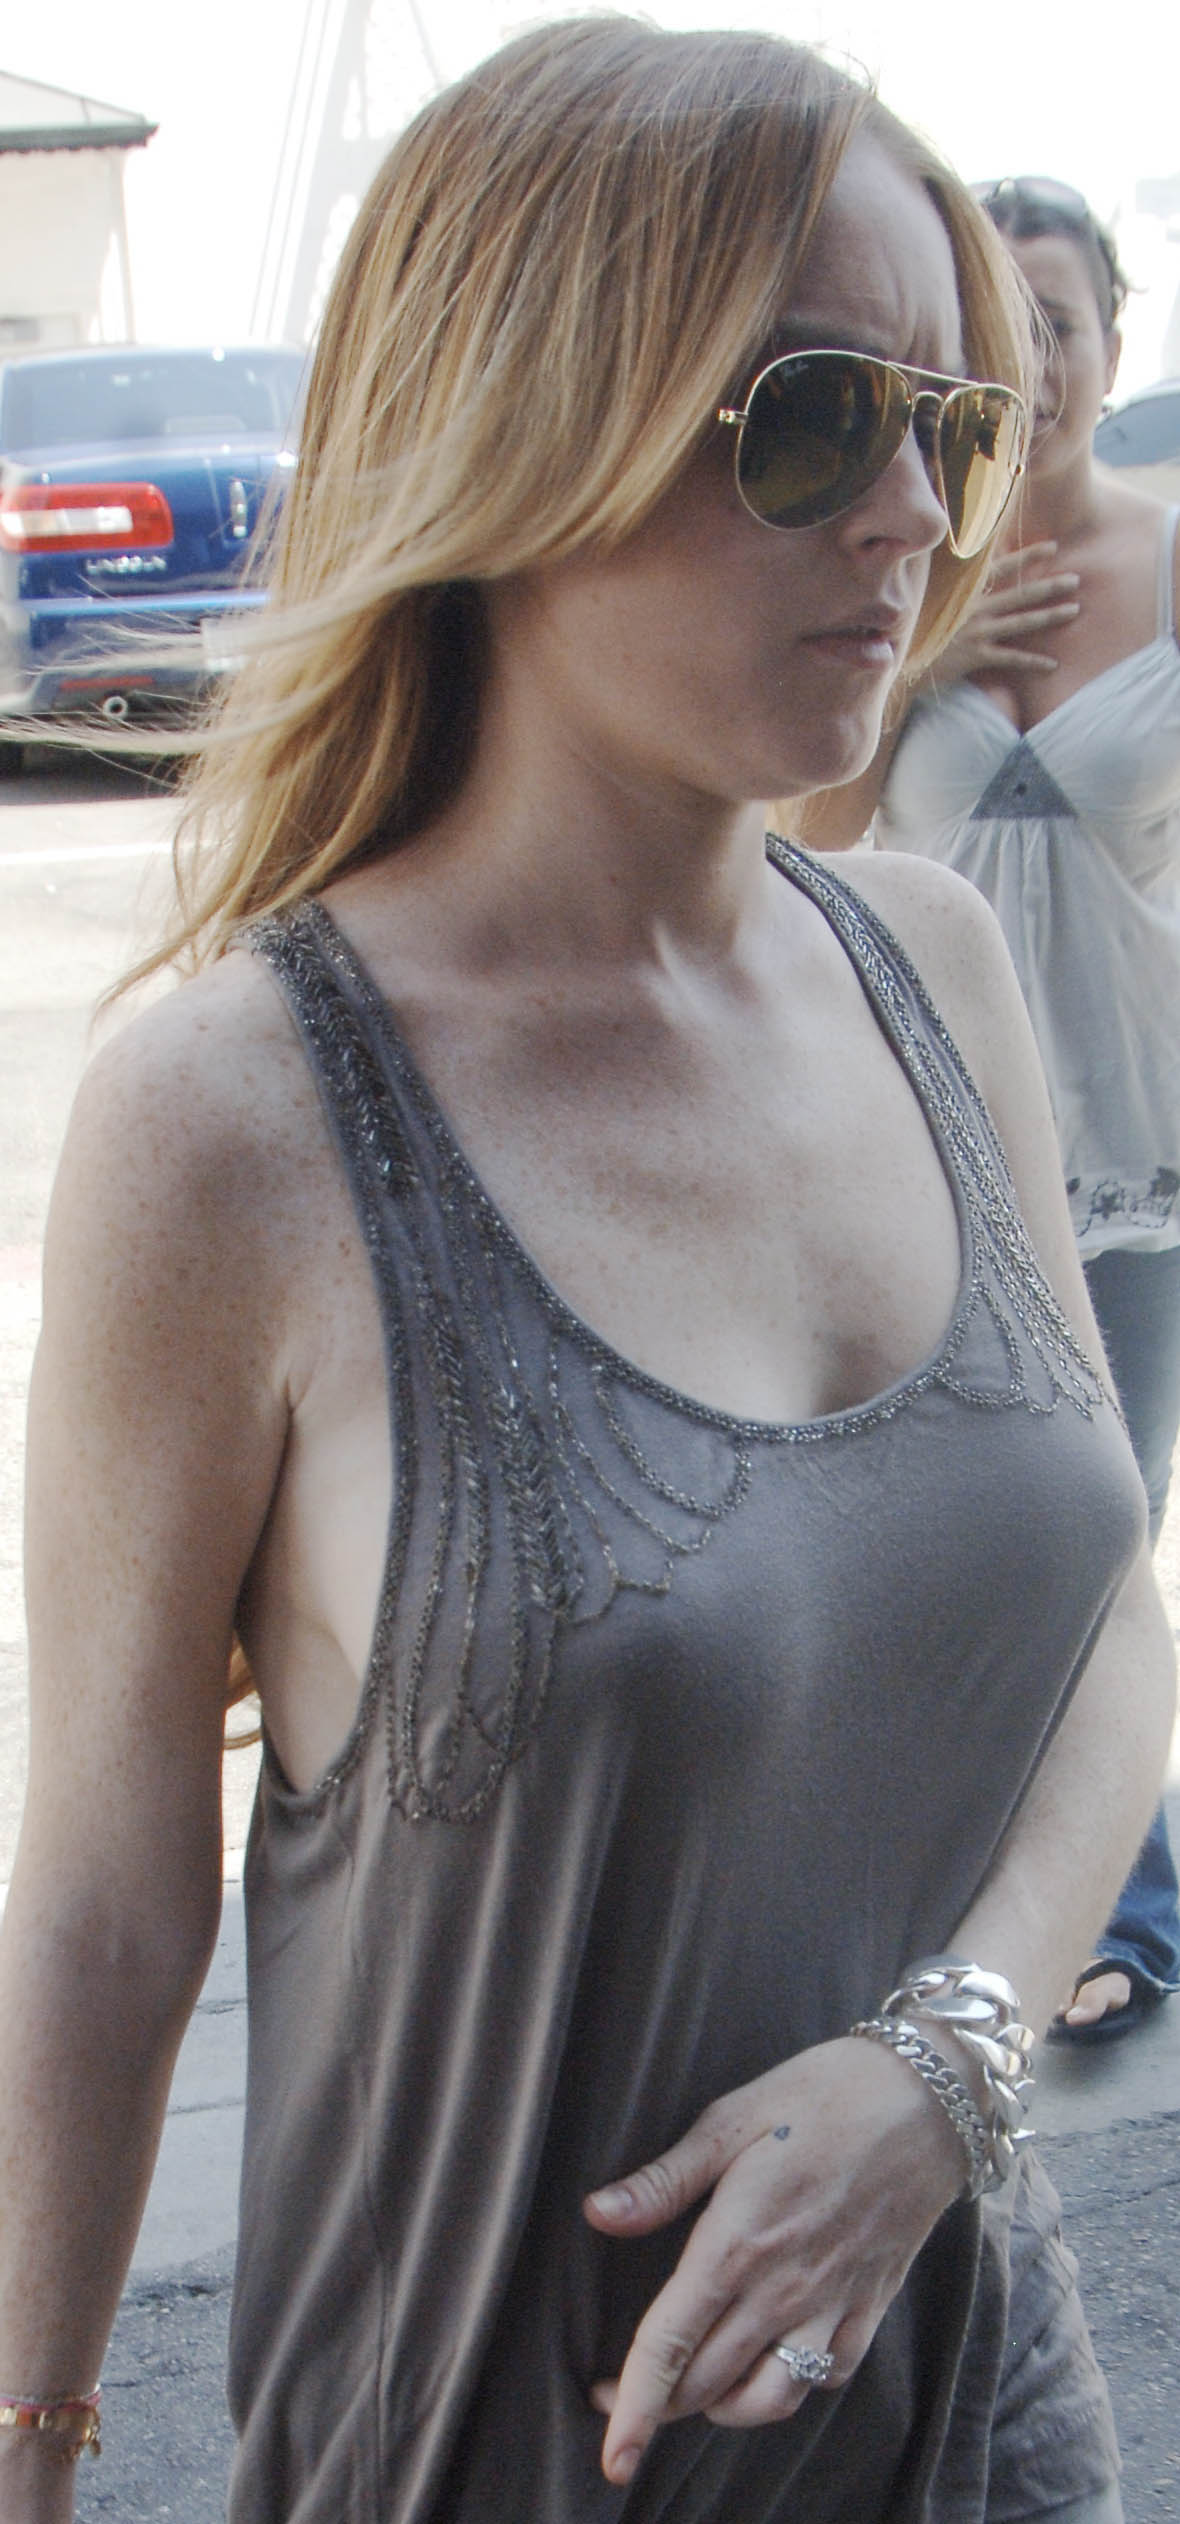 Lindsay lohan nipples